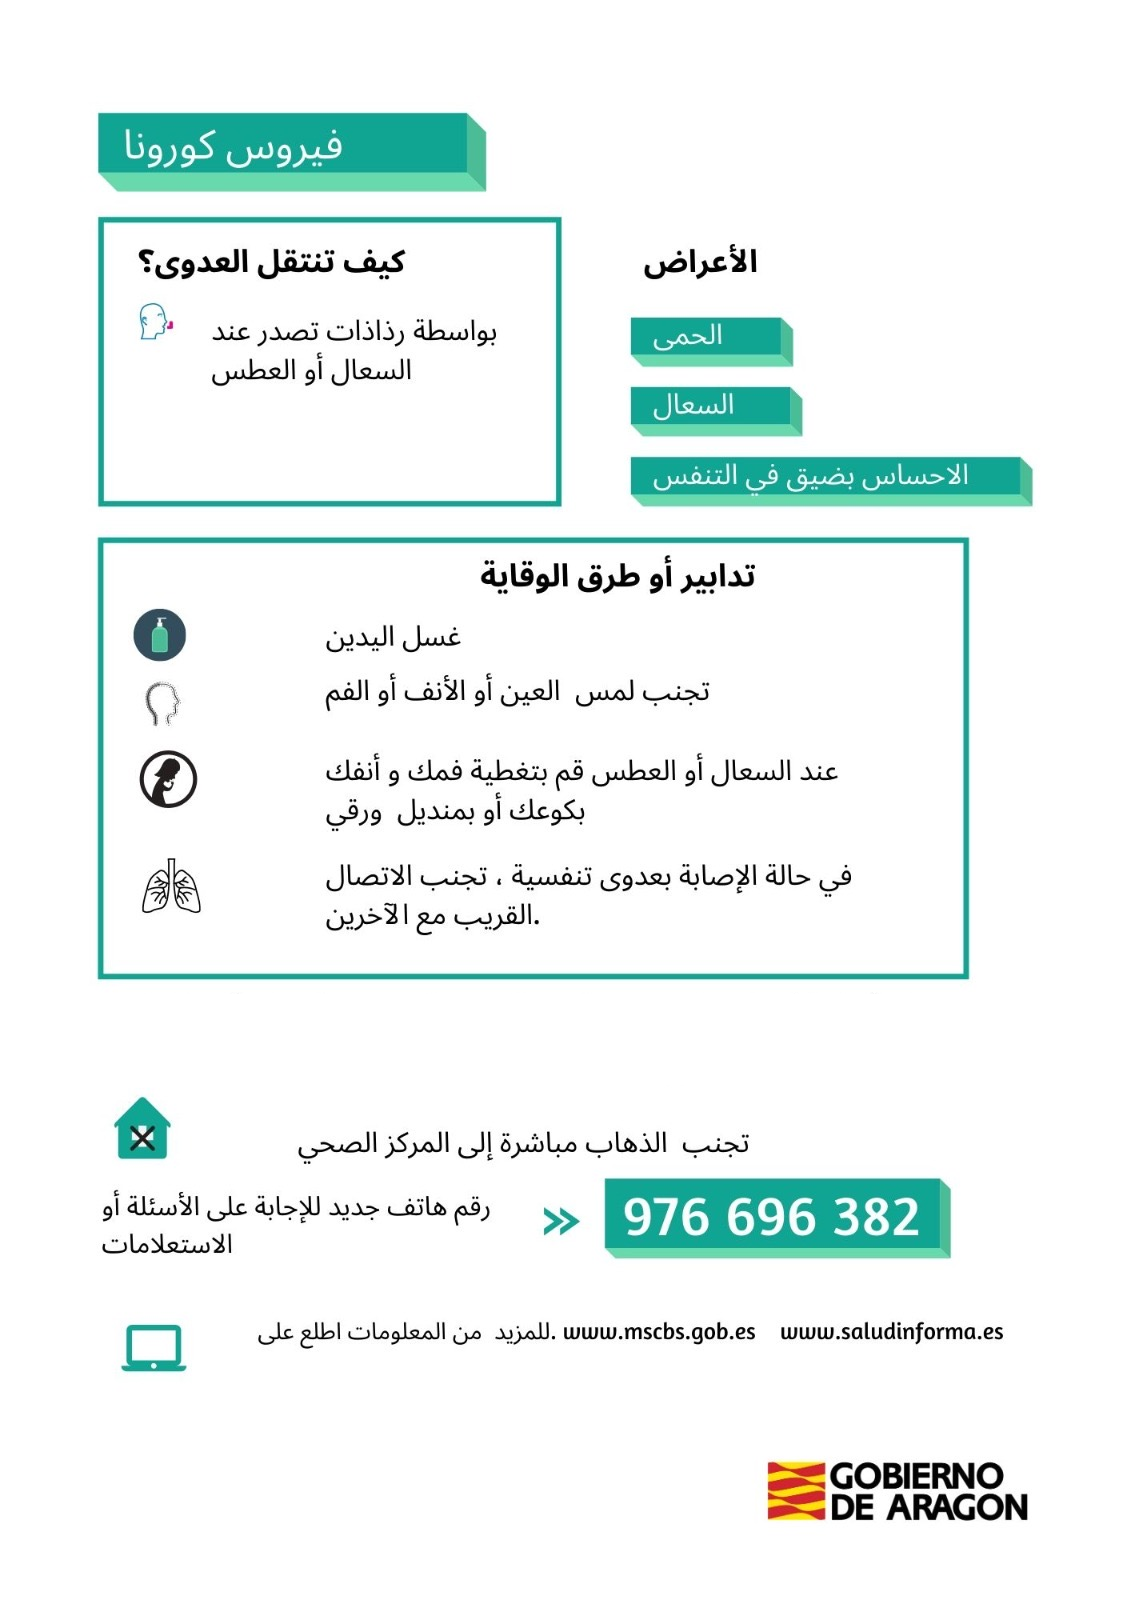 Información sobre el coronavirus en árabe